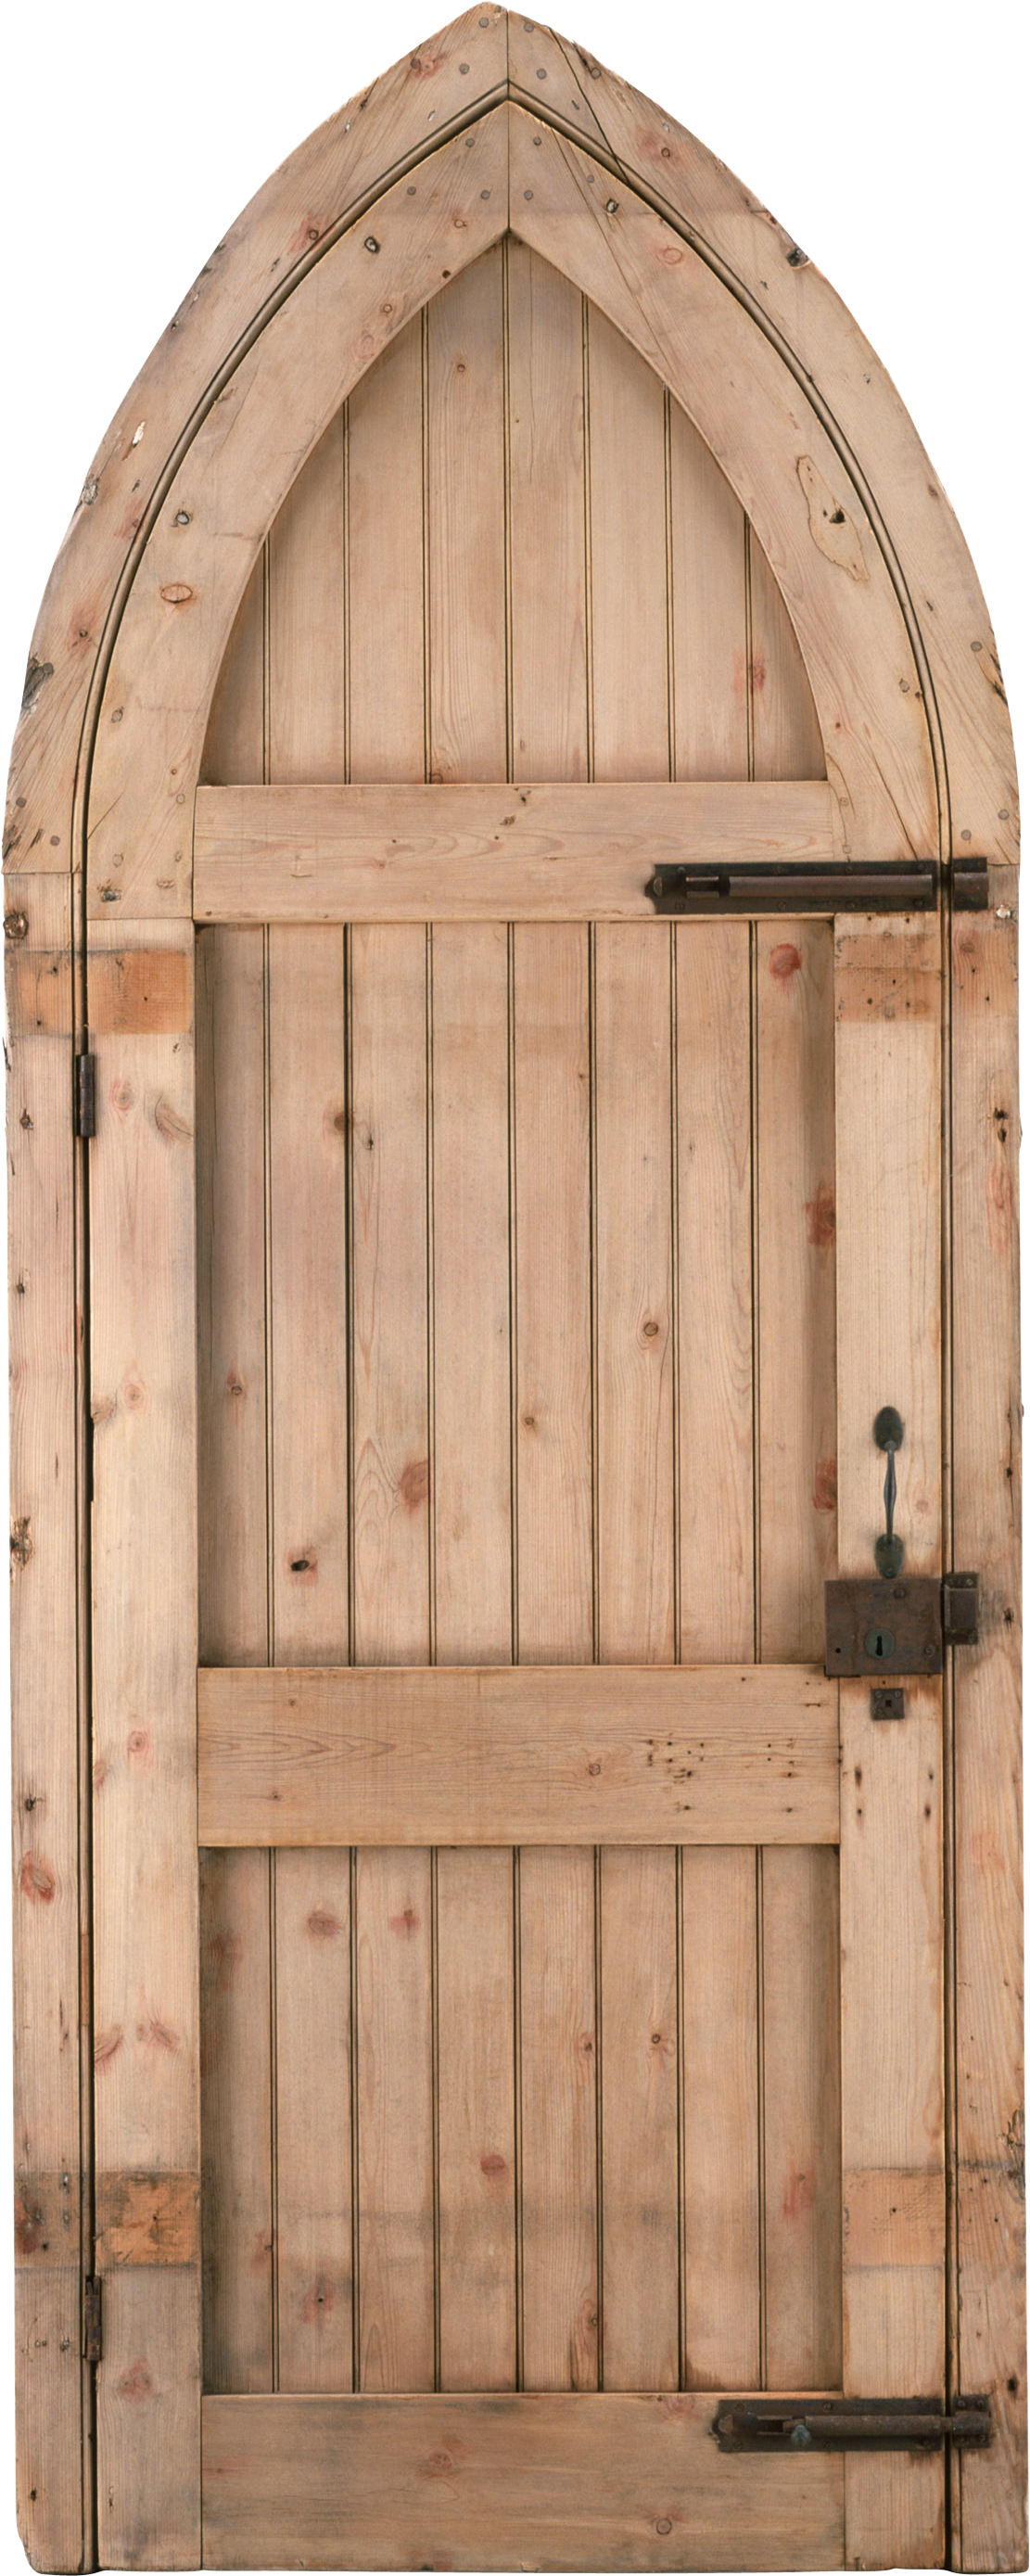 Wooden Castle Door - Medieval Old Wooden Door Png Clipart (1111x2778), Png Download